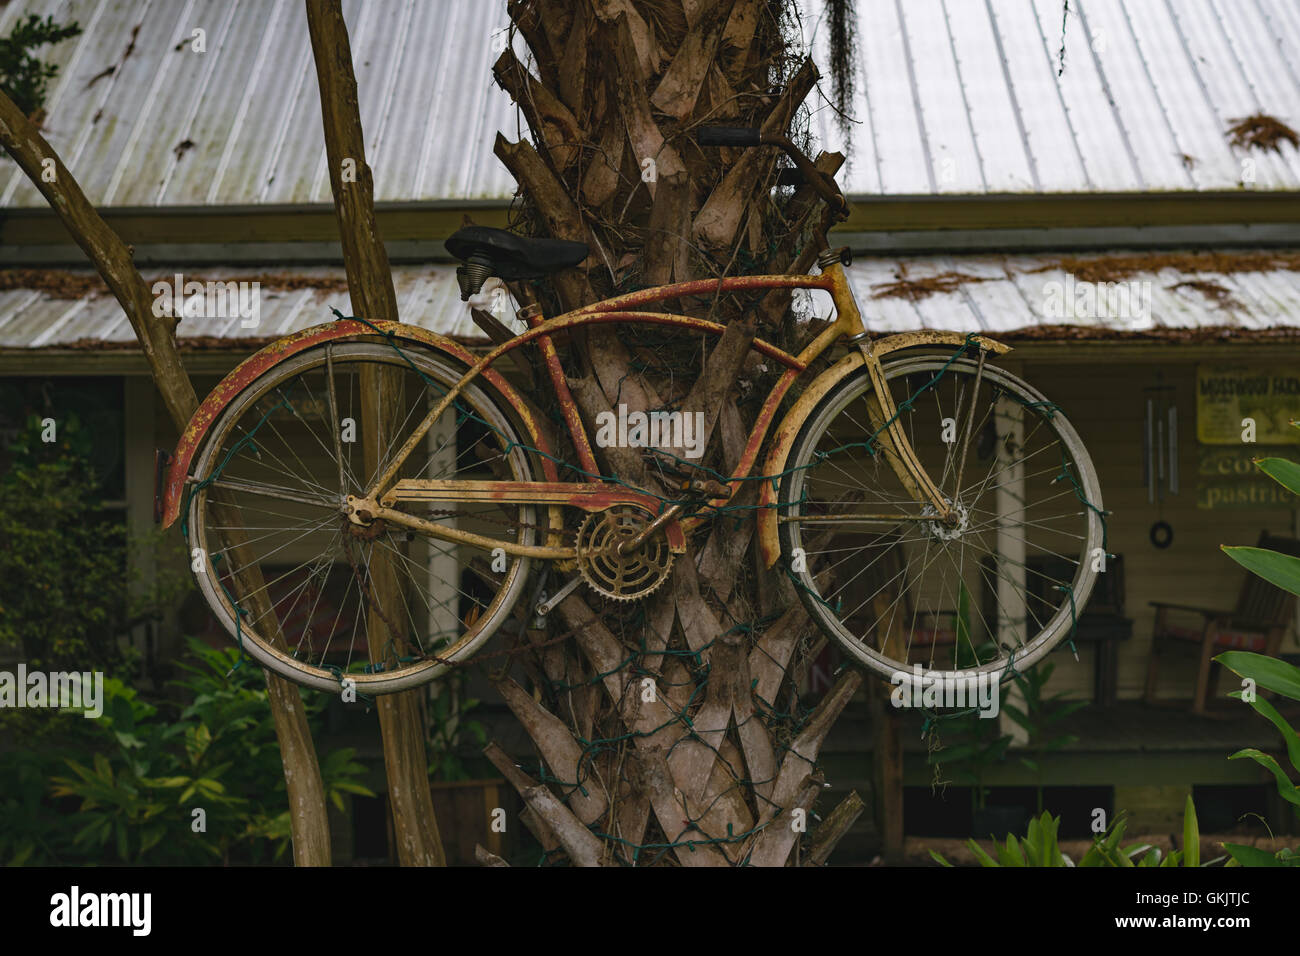 Ein altes rostiges Fahrrad gebunden an eine Palme in Florida. Eingehüllt in Weihnachtsbeleuchtung. Stockfoto